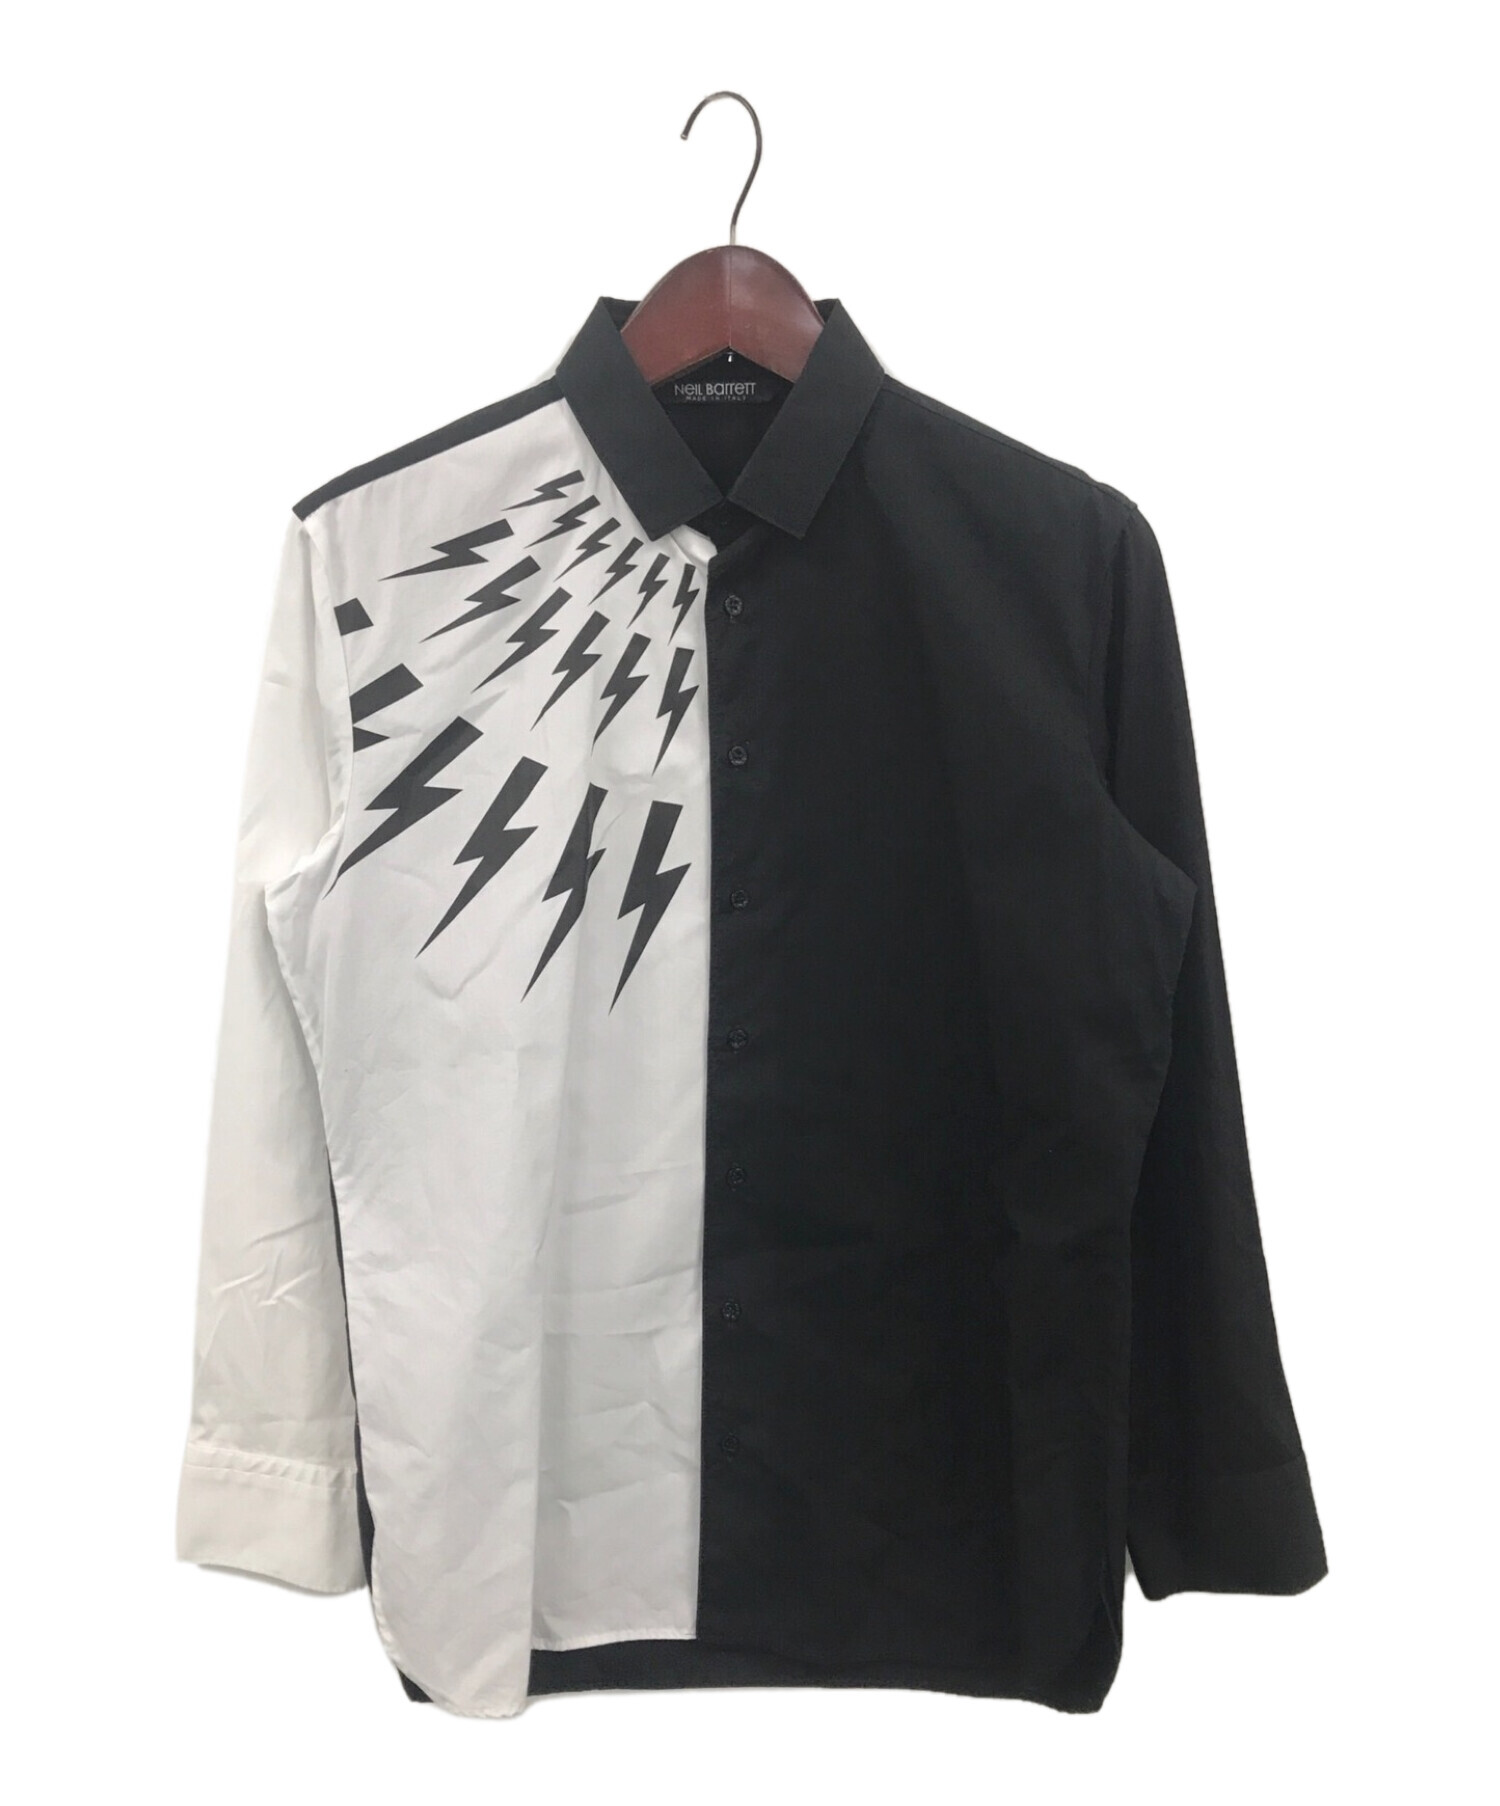 NEIL BARRETT (ニールバレット) バイカラーサンダーシャツ ブラック×ホワイト サイズ:M